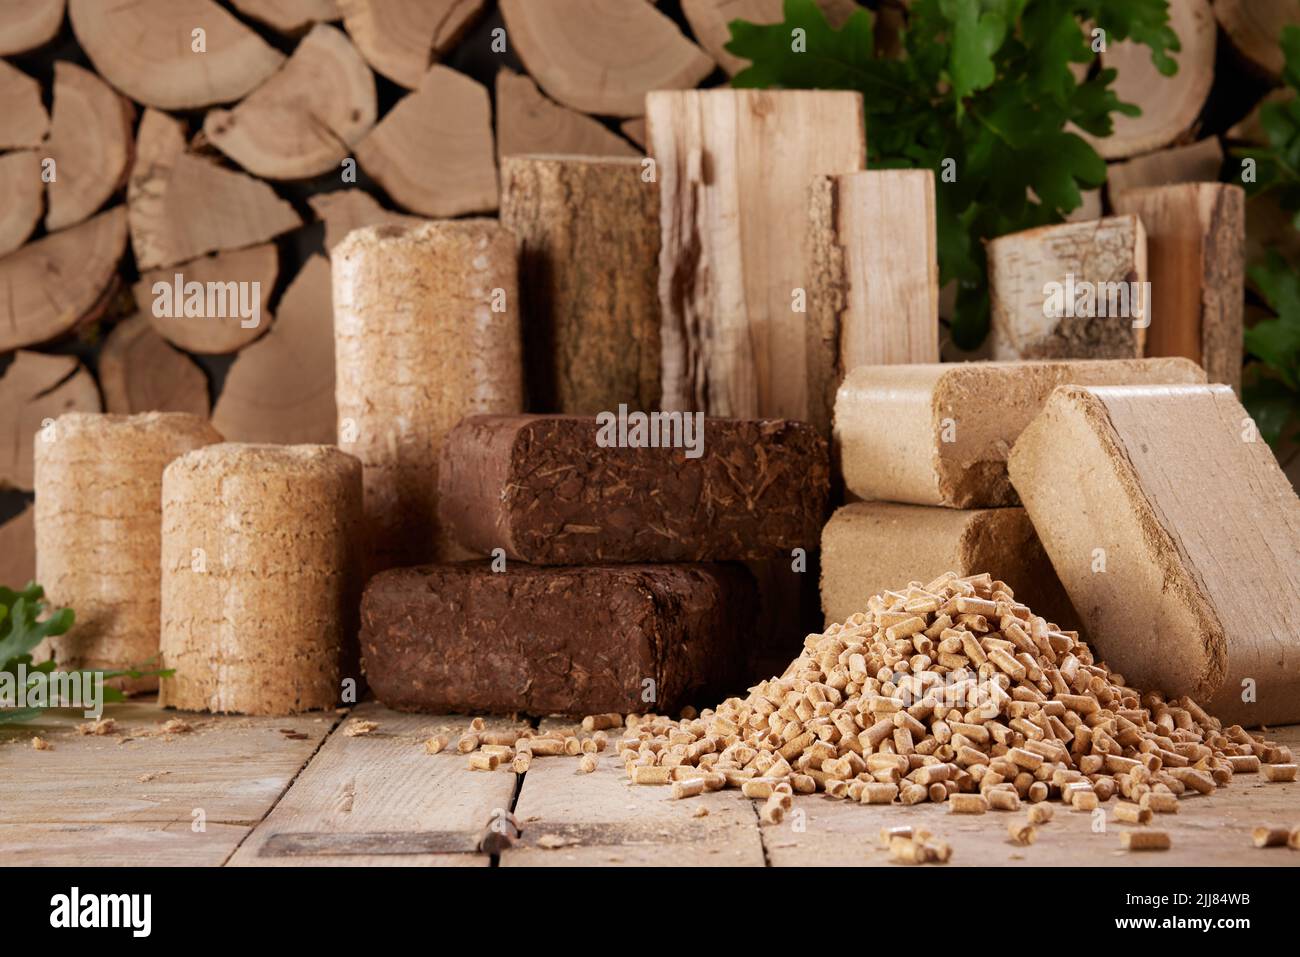 Varias briquetas de biocombustible comprimido y pirámide de pellets de madera dispuestos sobre una mesa de madera contra la pila de leña a la luz del día Foto de stock